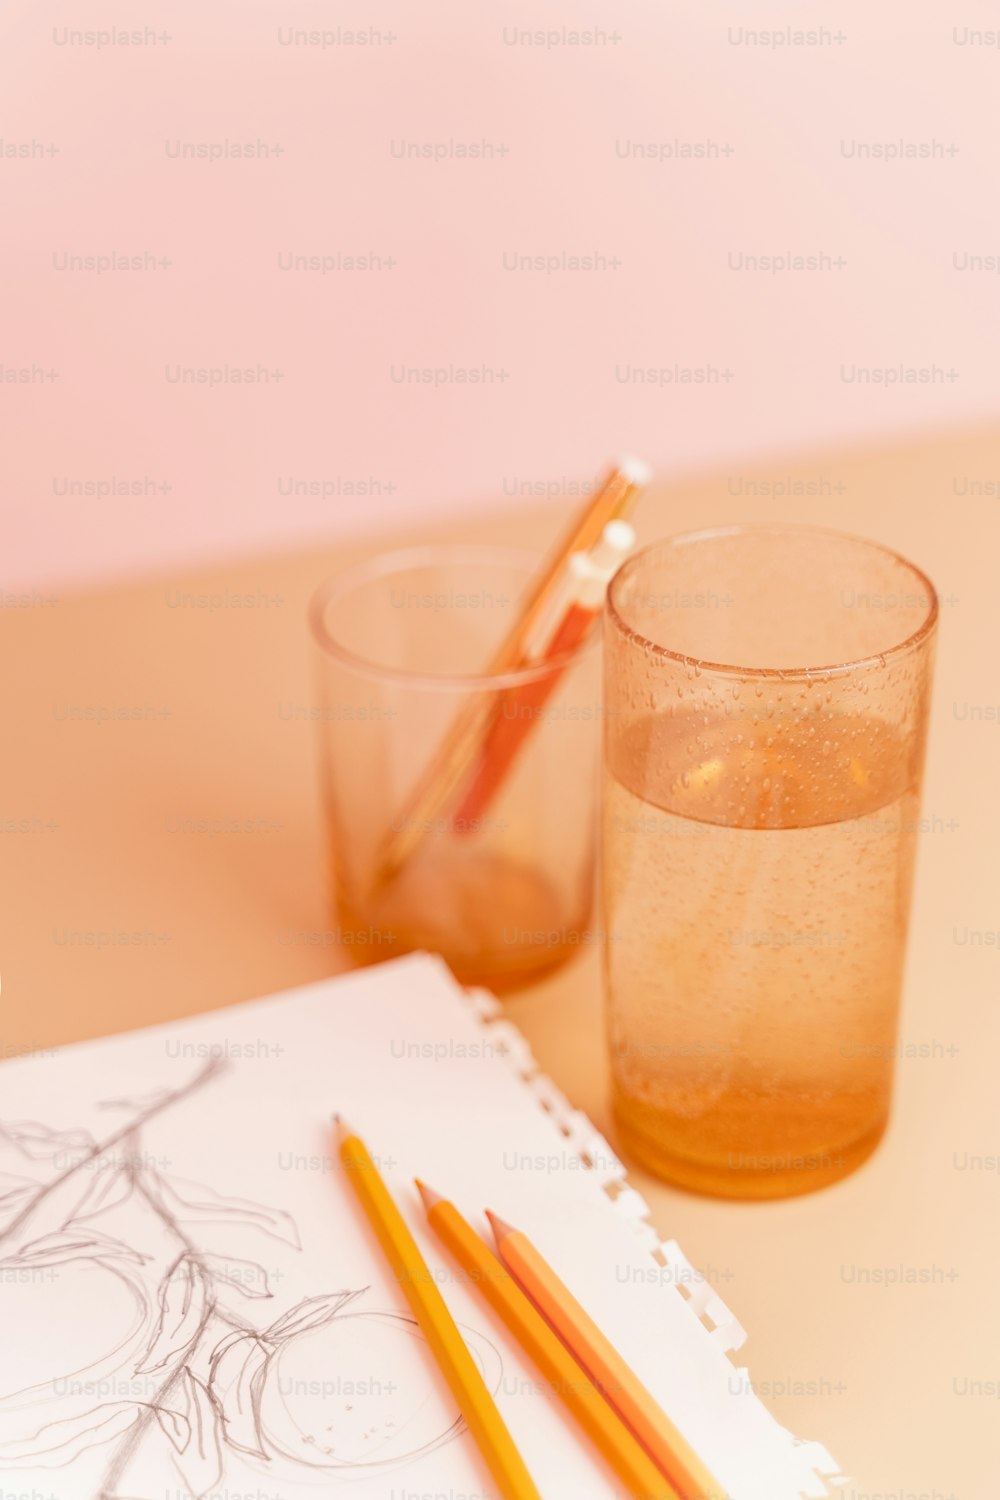 un crayon et un verre d’eau sur une table